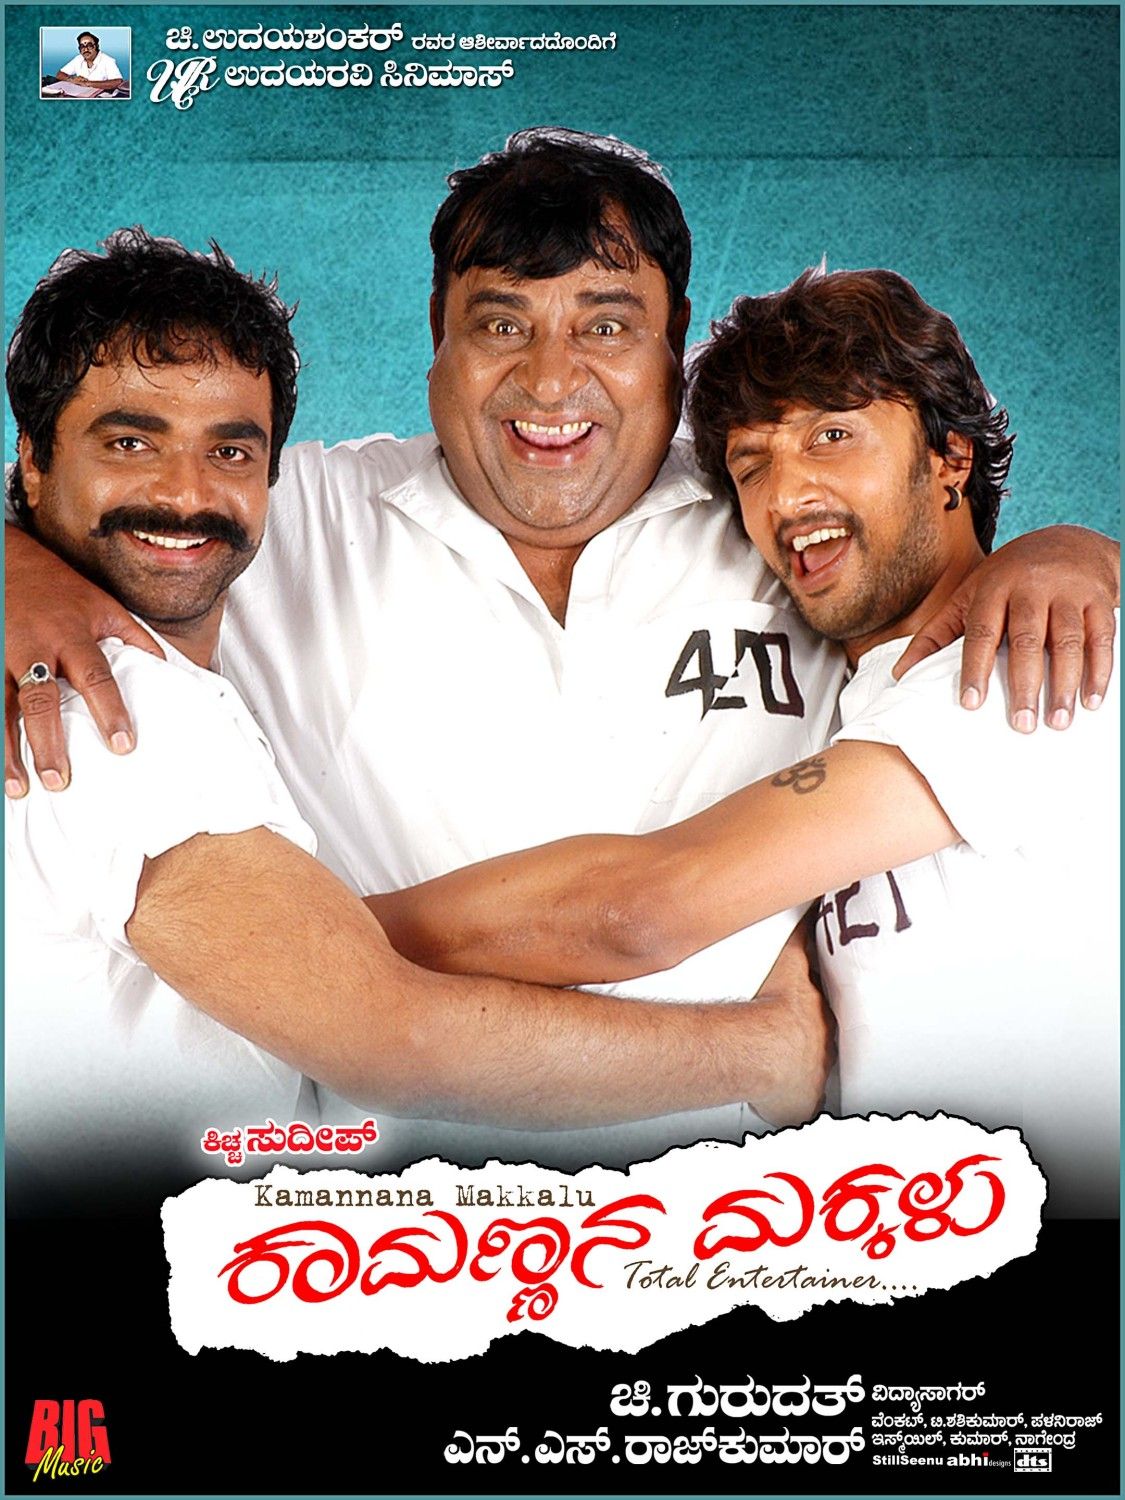 Extra Large Movie Poster Image for Kamannana Makkalu (#5 of 17)